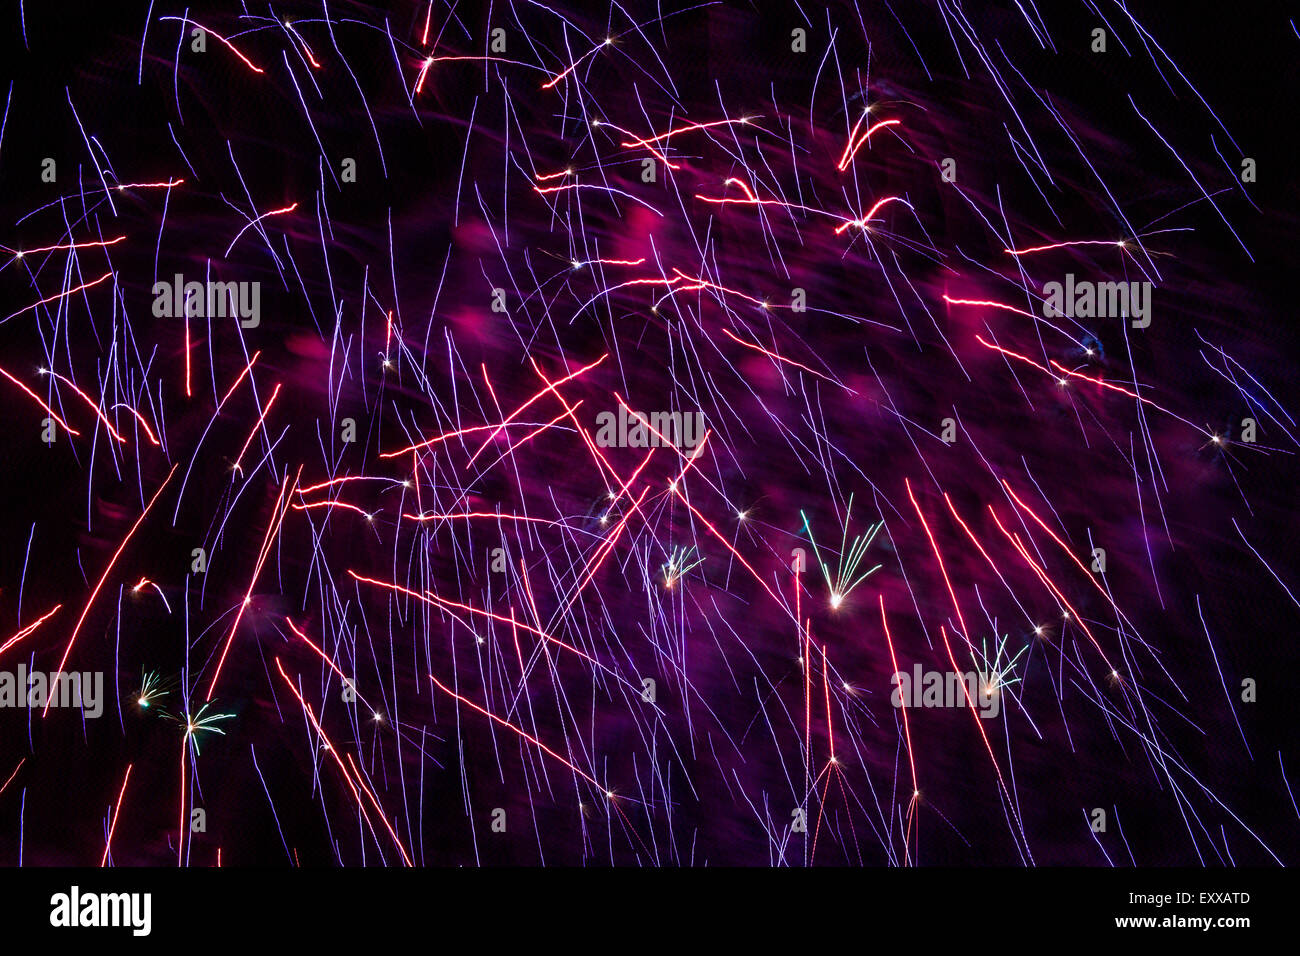 Abstract e splendidi modelli di luce creato da scoppiare i fuochi d'artificio nel cielo notturno, Cincinnati in Ohio, Stati Uniti d'America Foto Stock